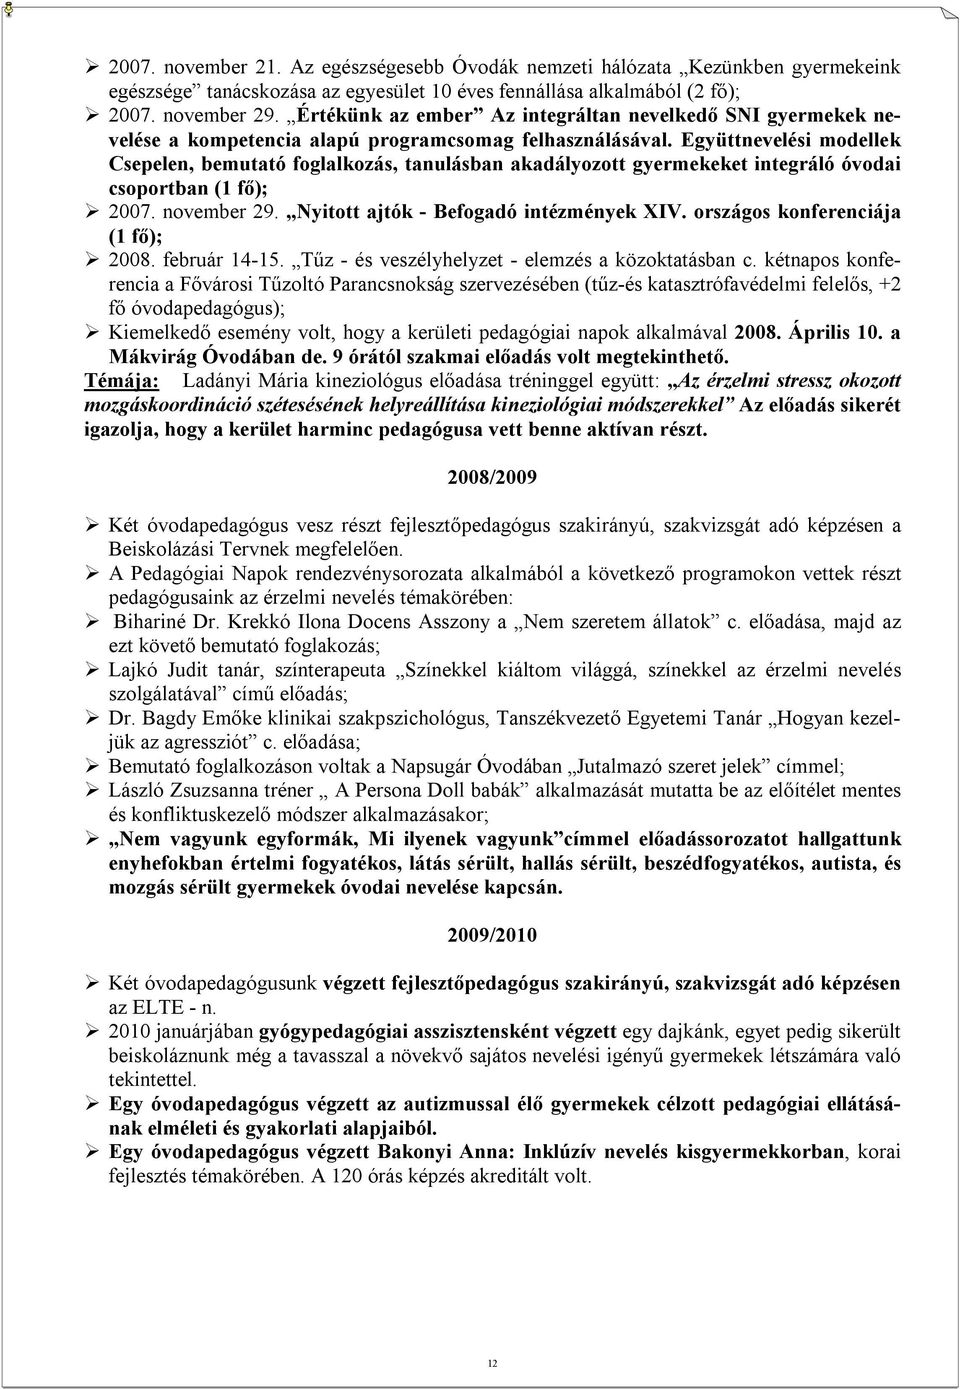 Együttnevelési modellek Csepelen, bemutató foglalkozás, tanulásban akadályozott gyermekeket integráló óvodai csoportban (1 fő); 2007. november 29. Nyitott ajtók - Befogadó intézmények XIV.